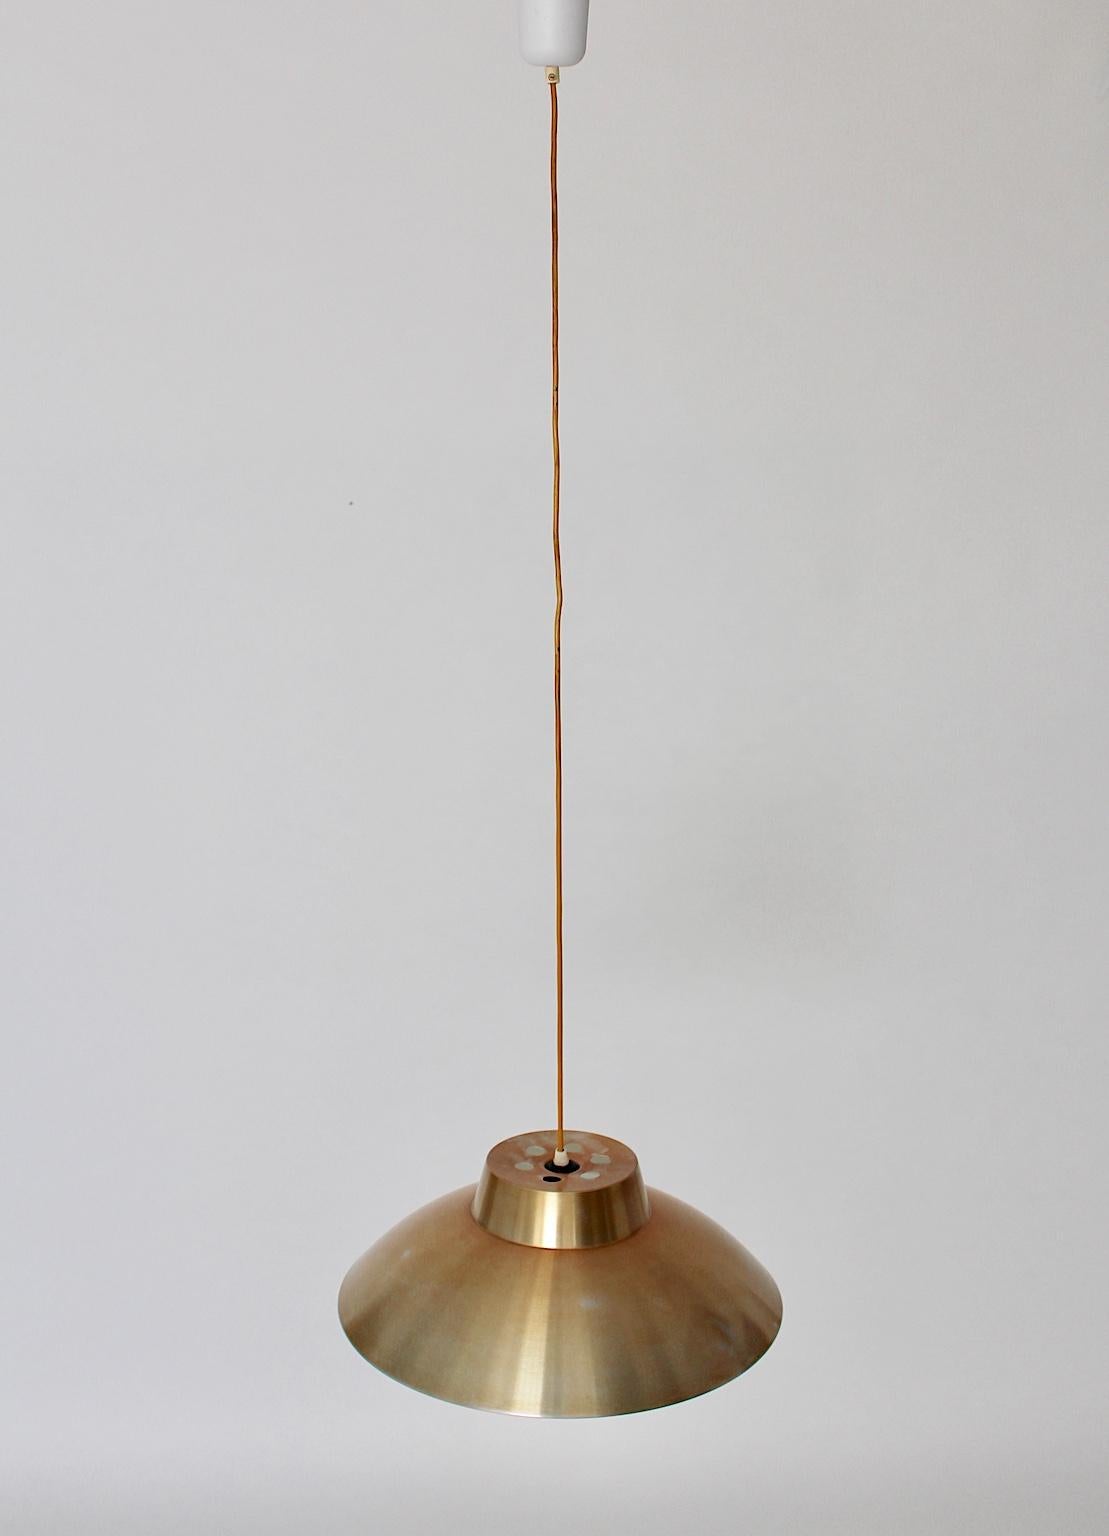 Lampe suspendue vintage Mid Century Modern de Philips Netherlands, conçue dans les années 1960.
L'abat-jour en aluminium présente une surface éloxée dorée, tandis que la forme présente un merveilleux design calme et élégant.
Le Vintage est en bon